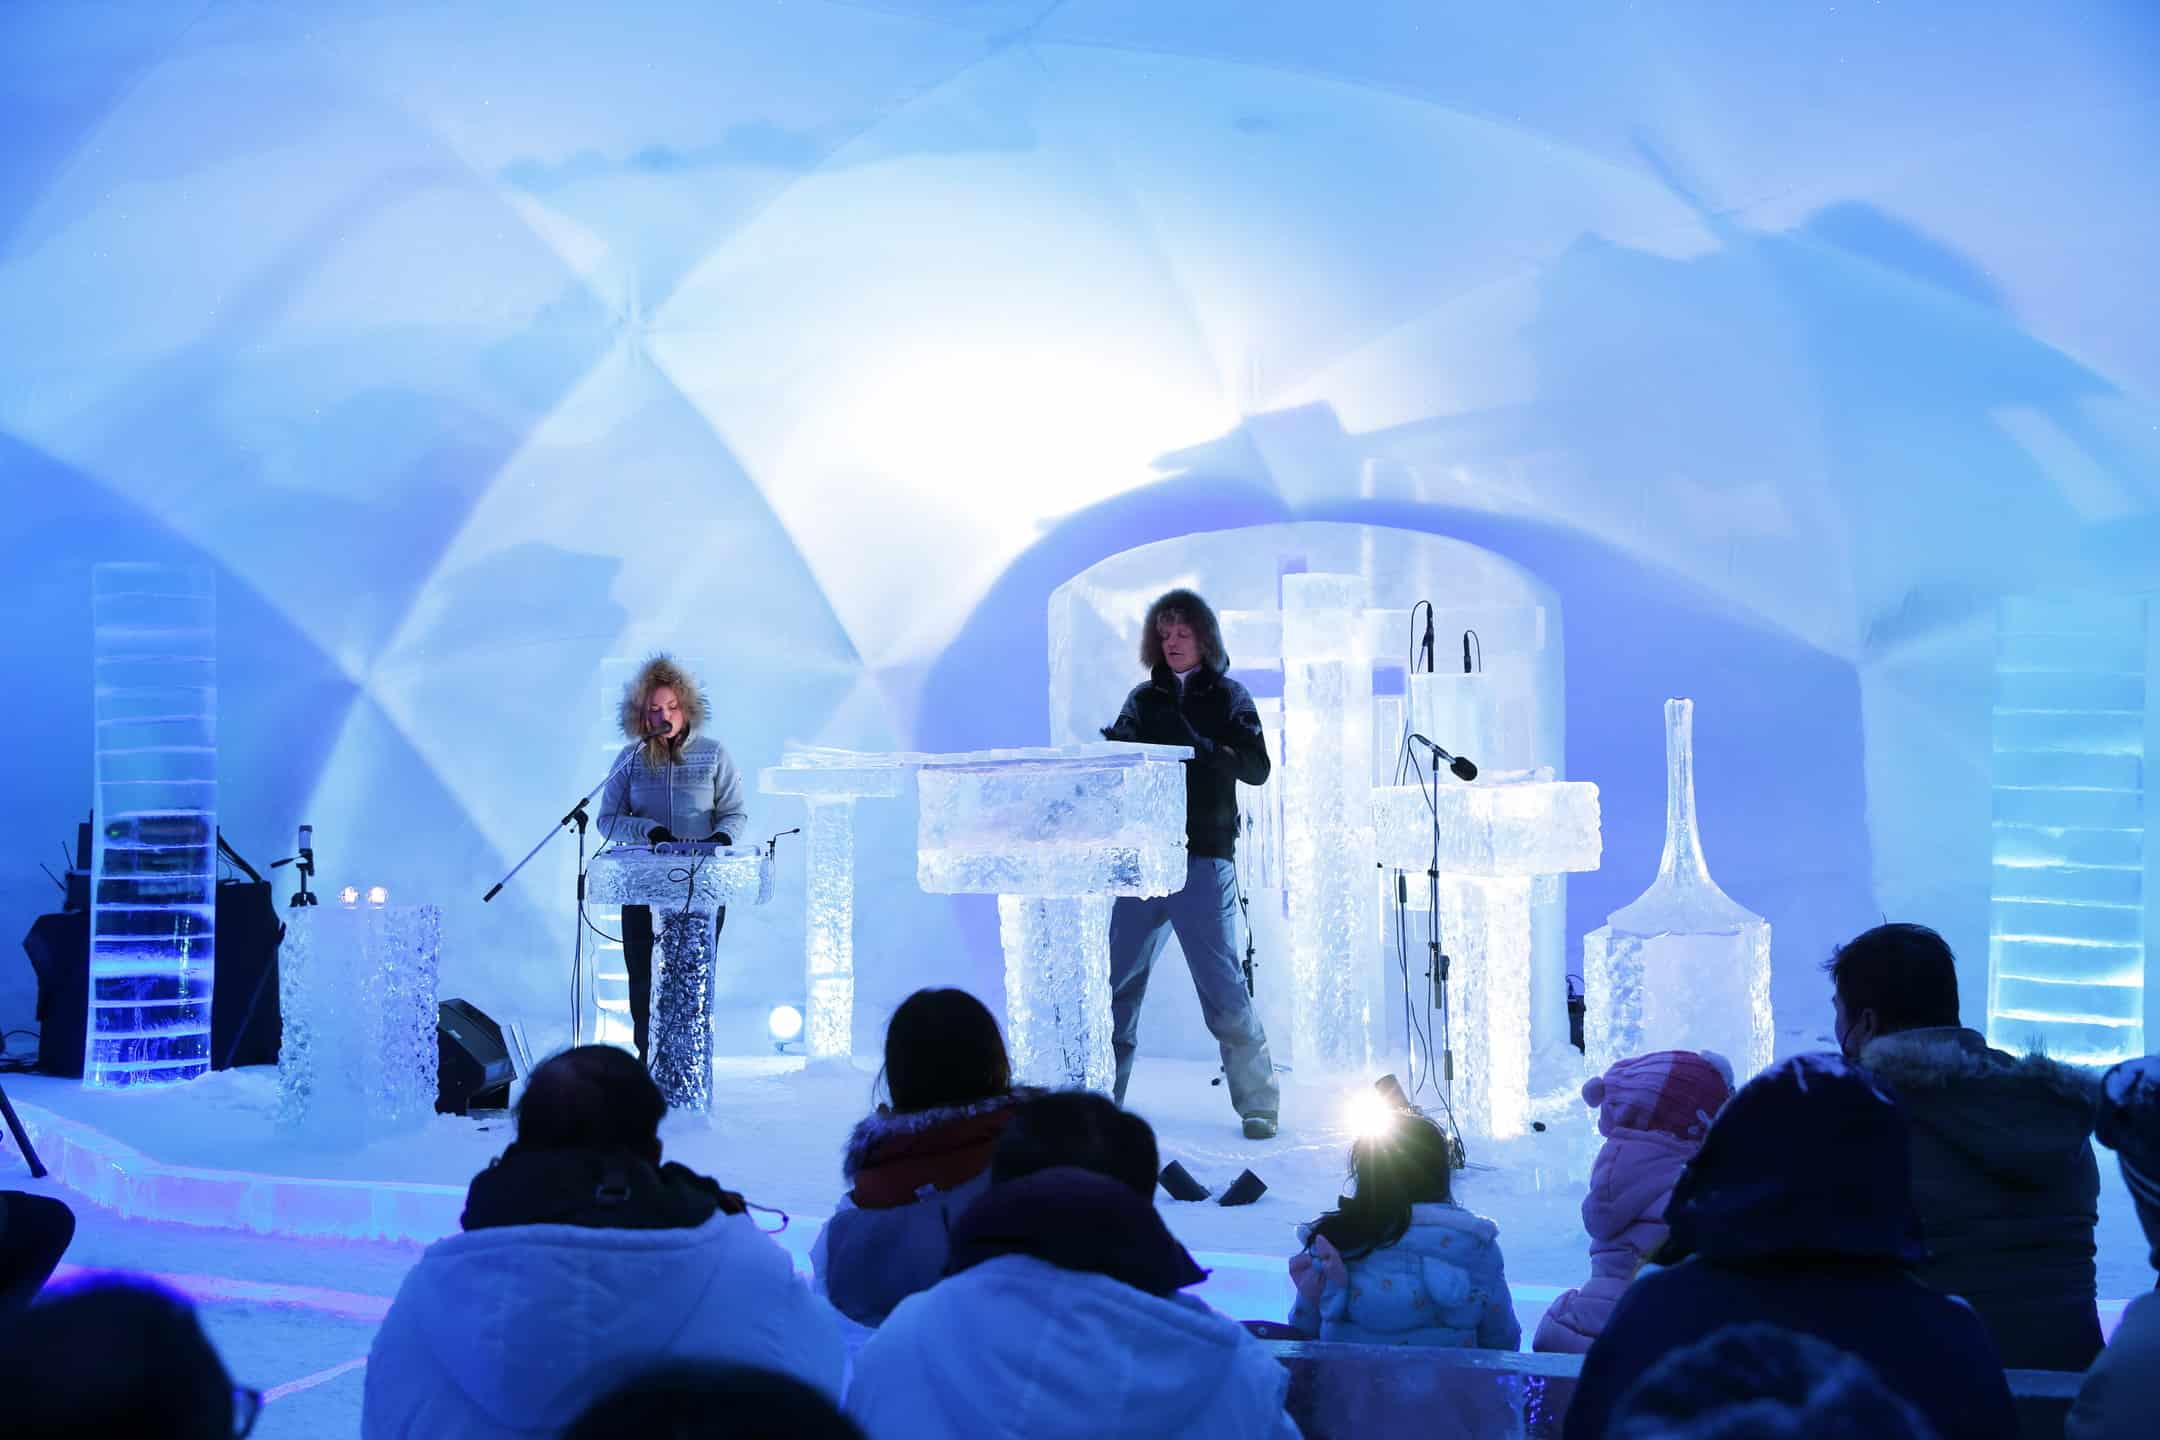 星野リゾート　トマム　2020年2月17日開催「氷のコンサート」紹介動画を公開　唯一無二の氷のミュージシャン「Terje Isungset(テリエ イースングセット)氏」による演奏